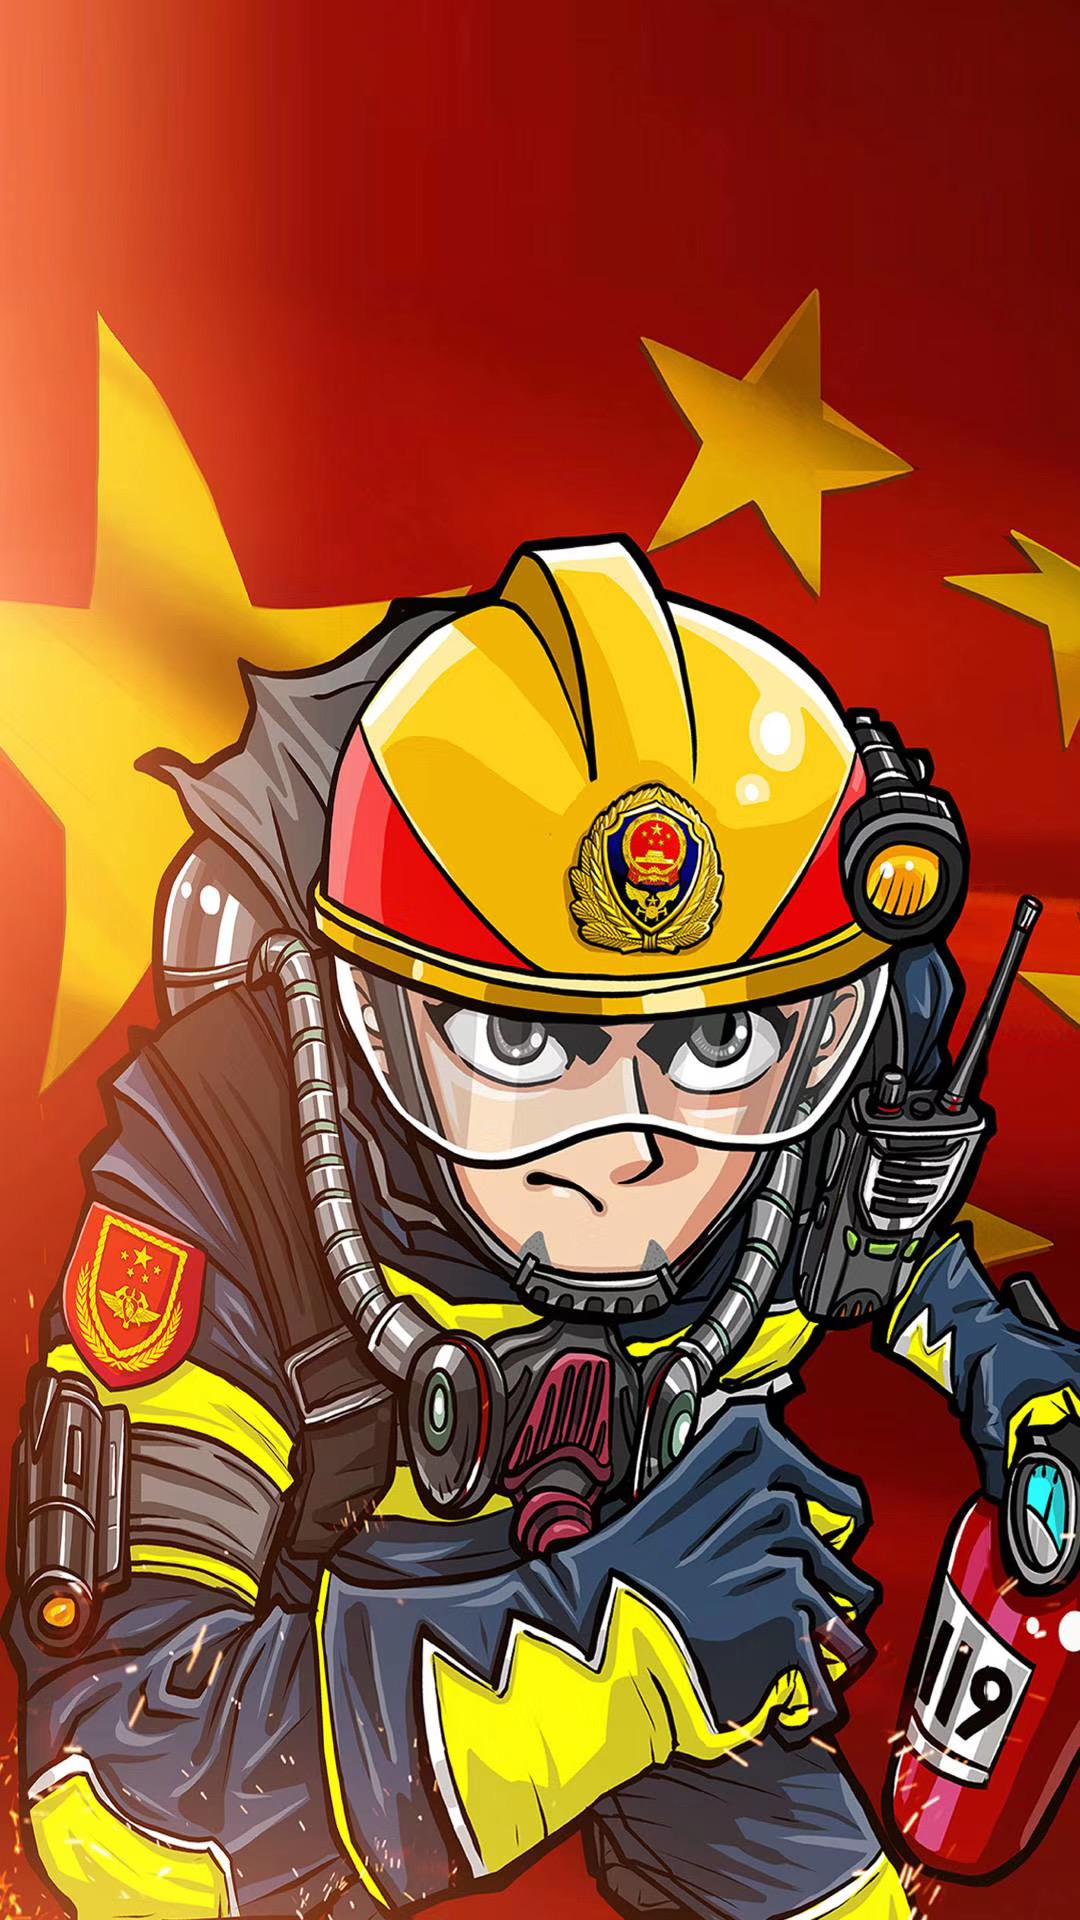 中国消防救援矢量图图片